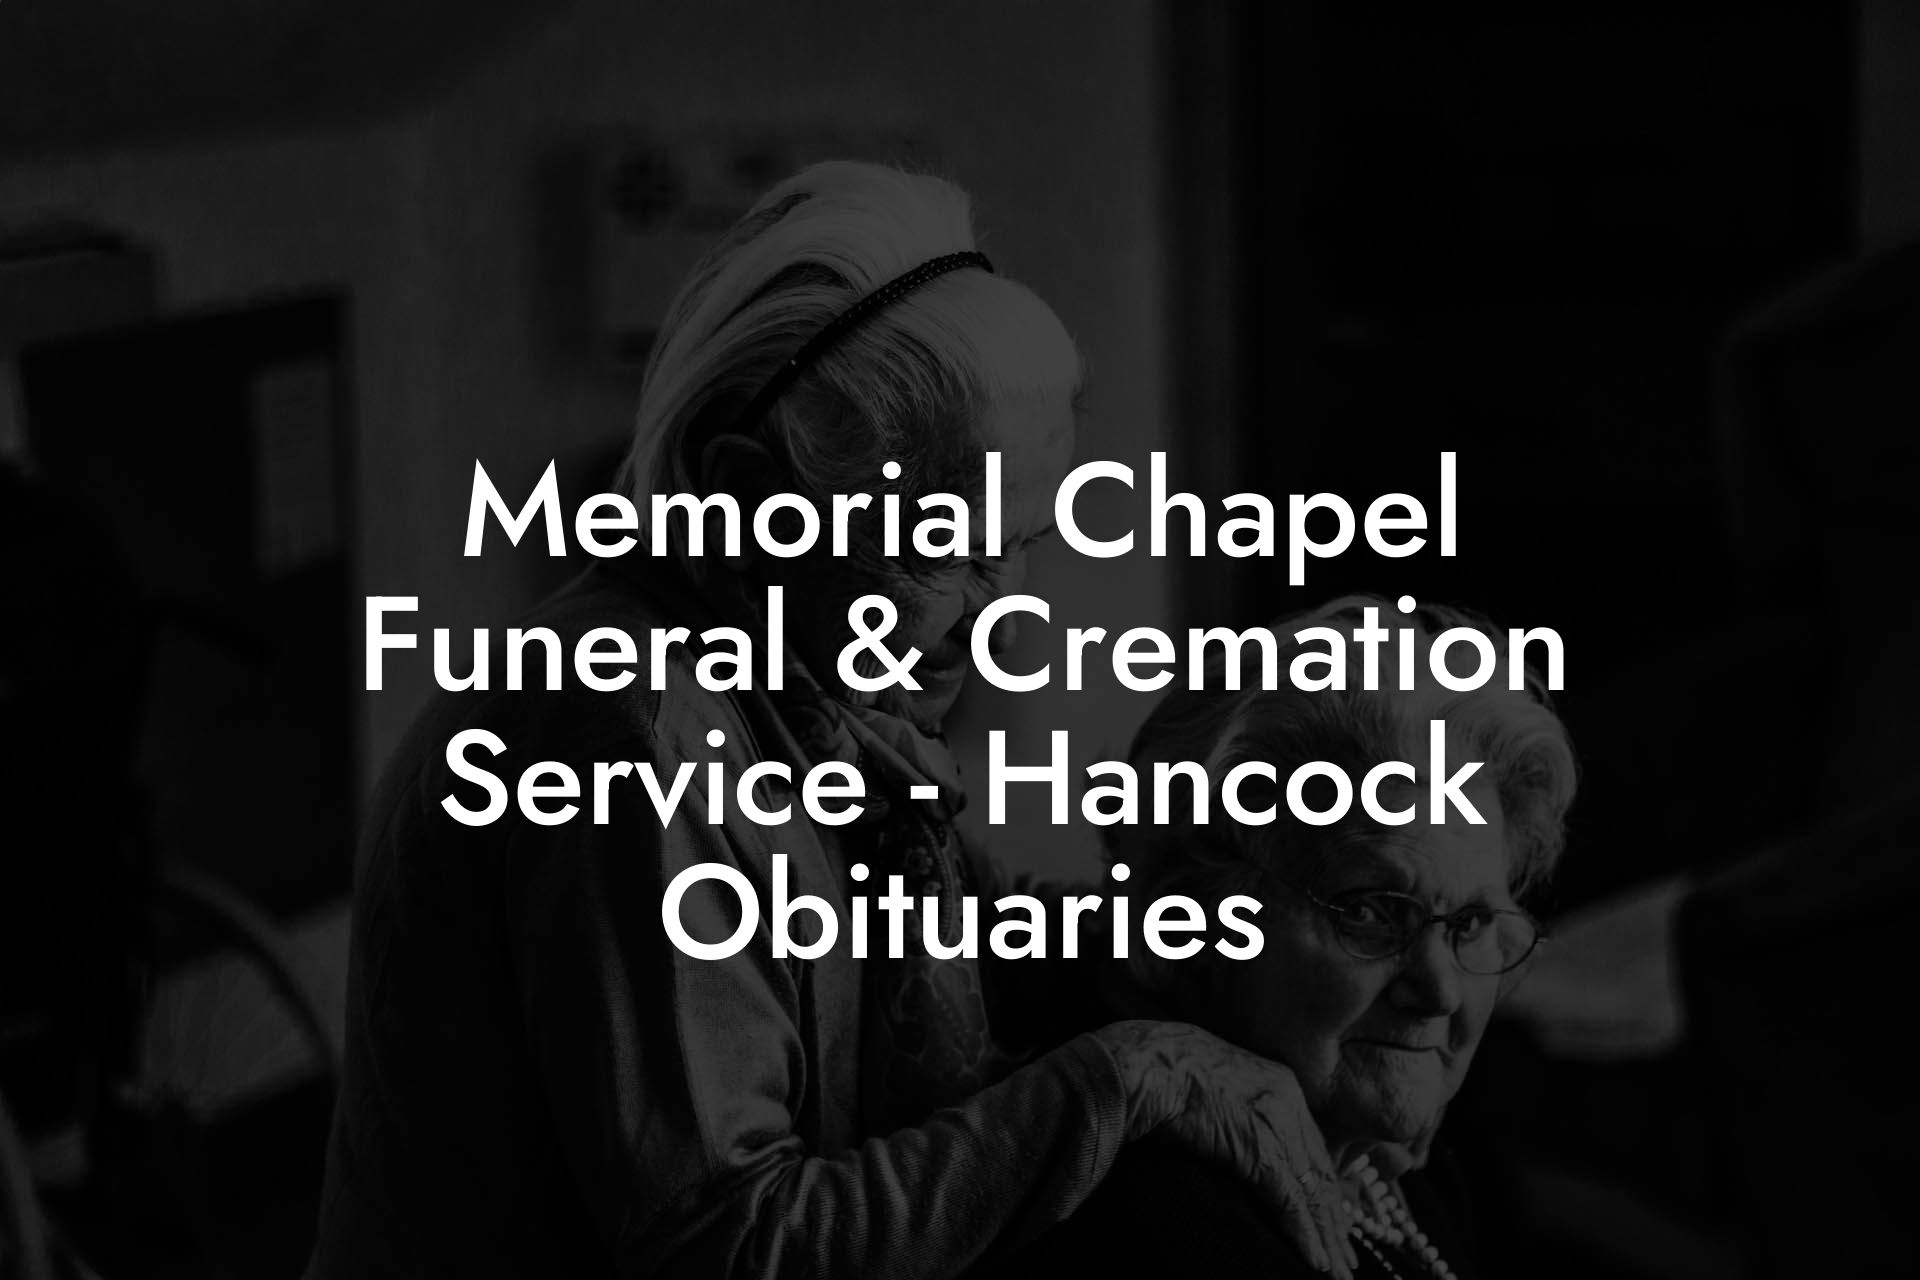 Memorial Chapel Funeral & Cremation Service - Hancock Obituaries